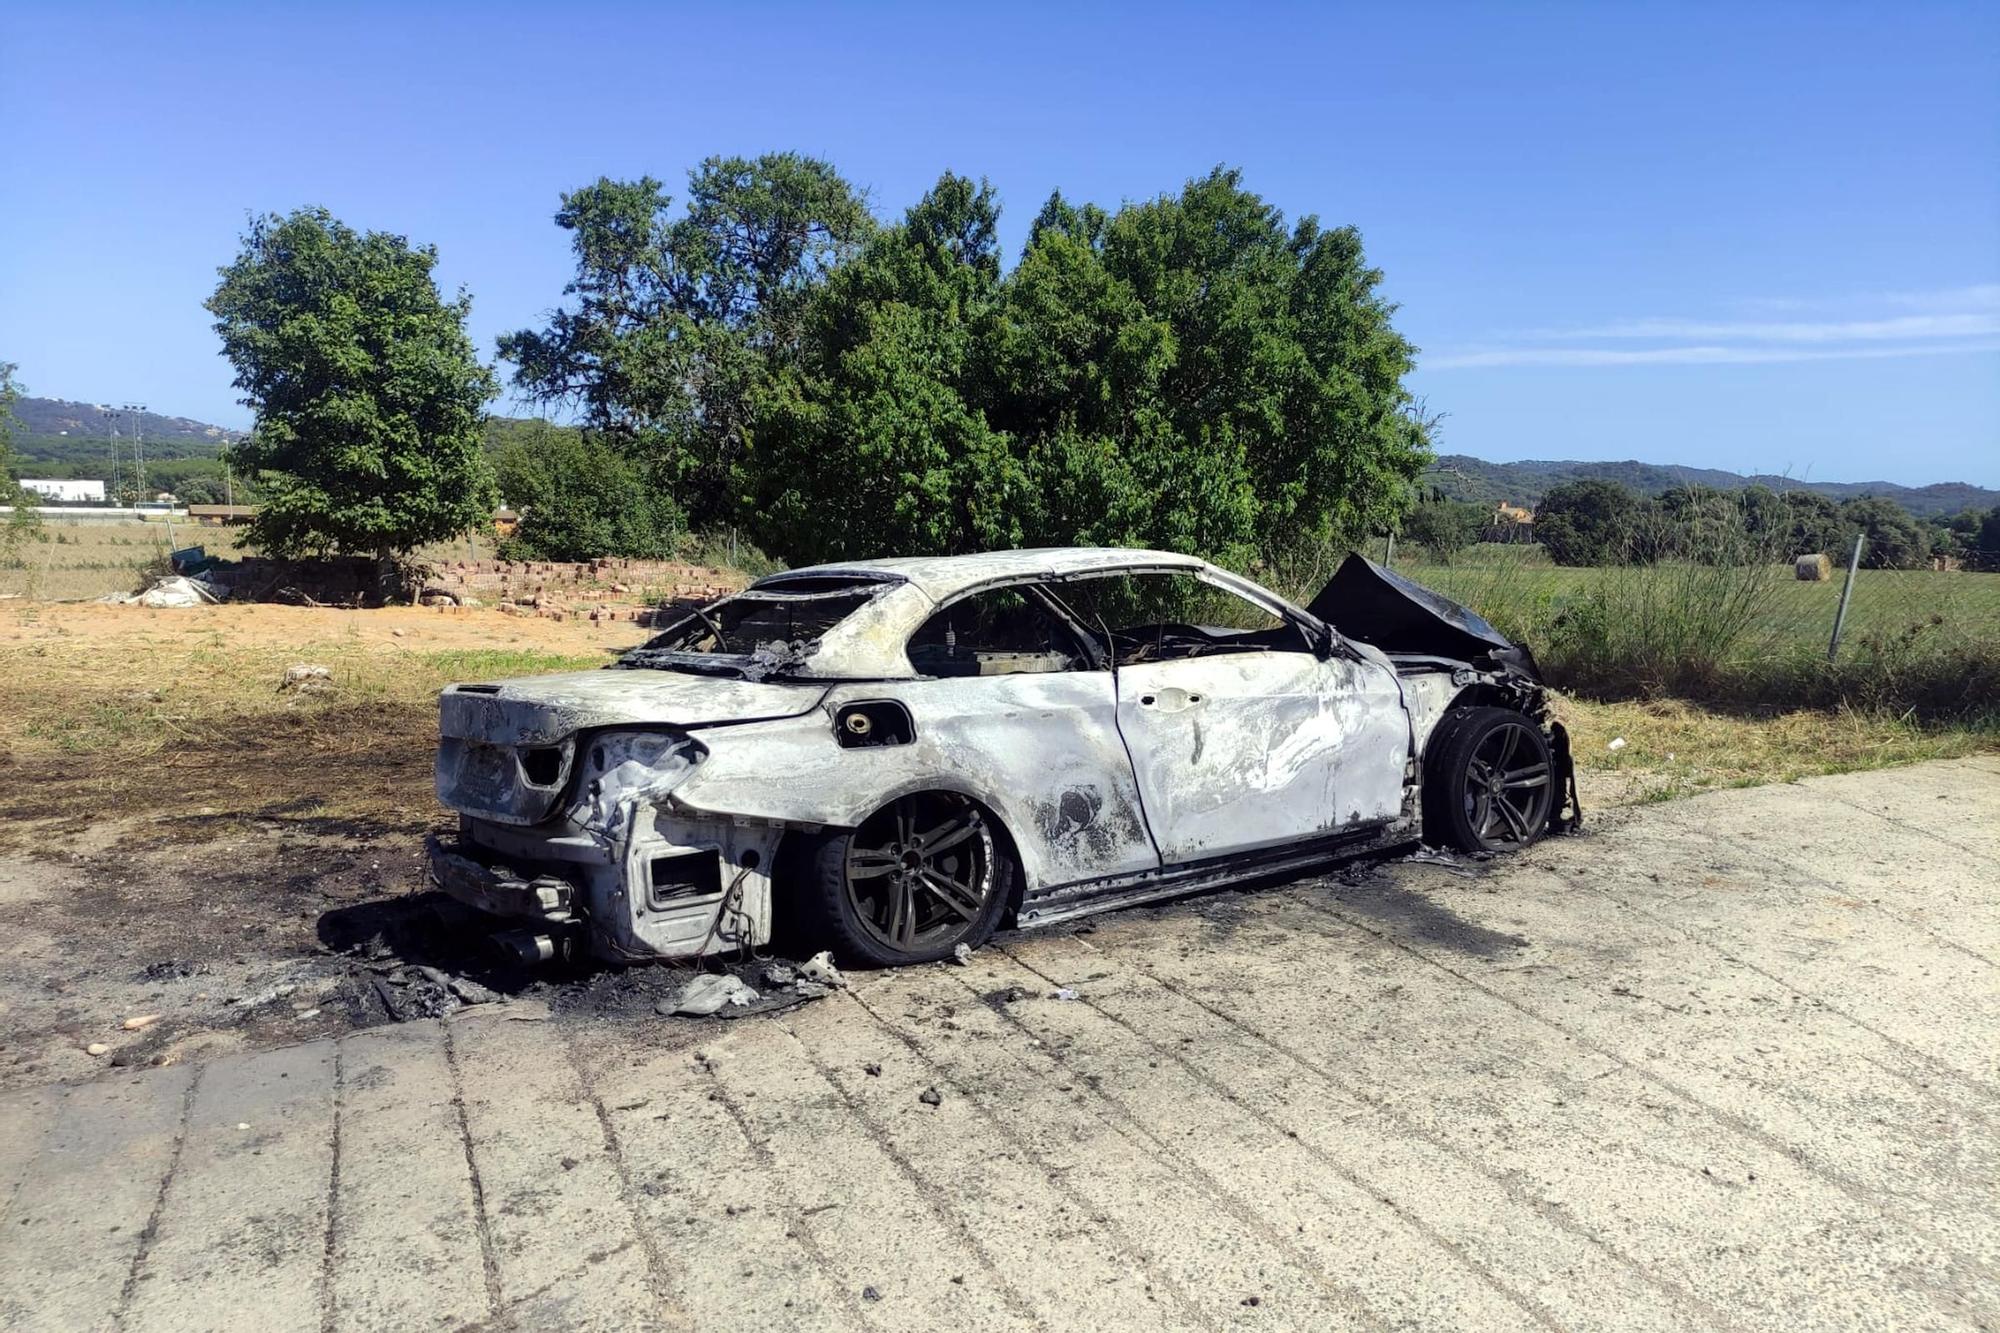 Les imatges del cotxe calcinat propietat del sospitós del tiroteig mortal a Girona